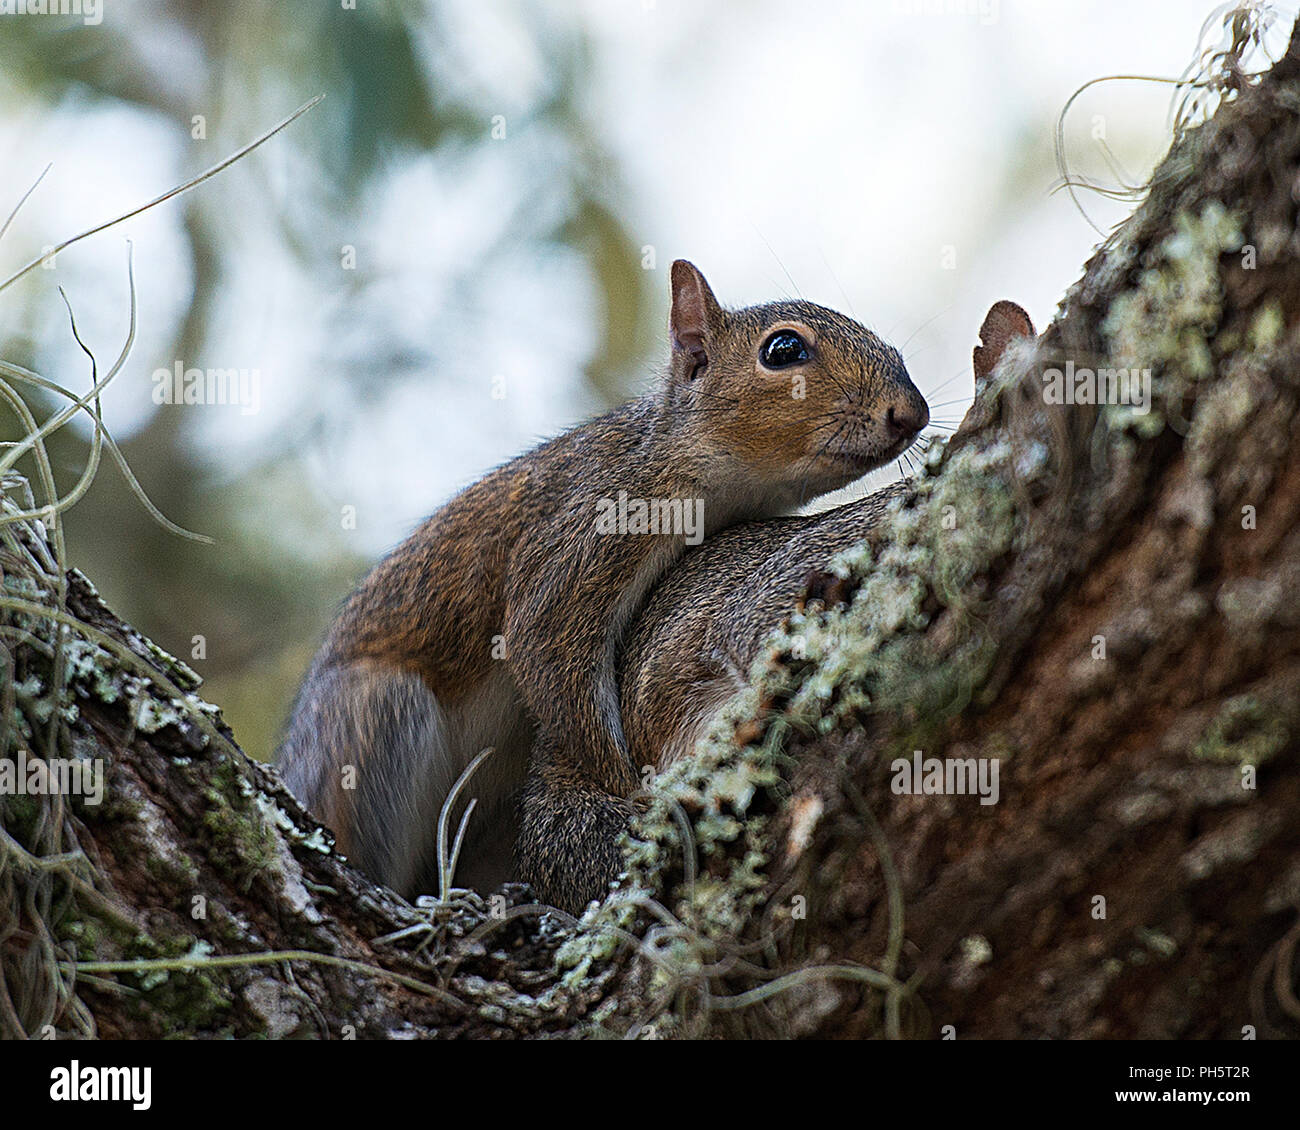 Eichhörnchen paar Paarung und seine Umgebung. Stockfoto